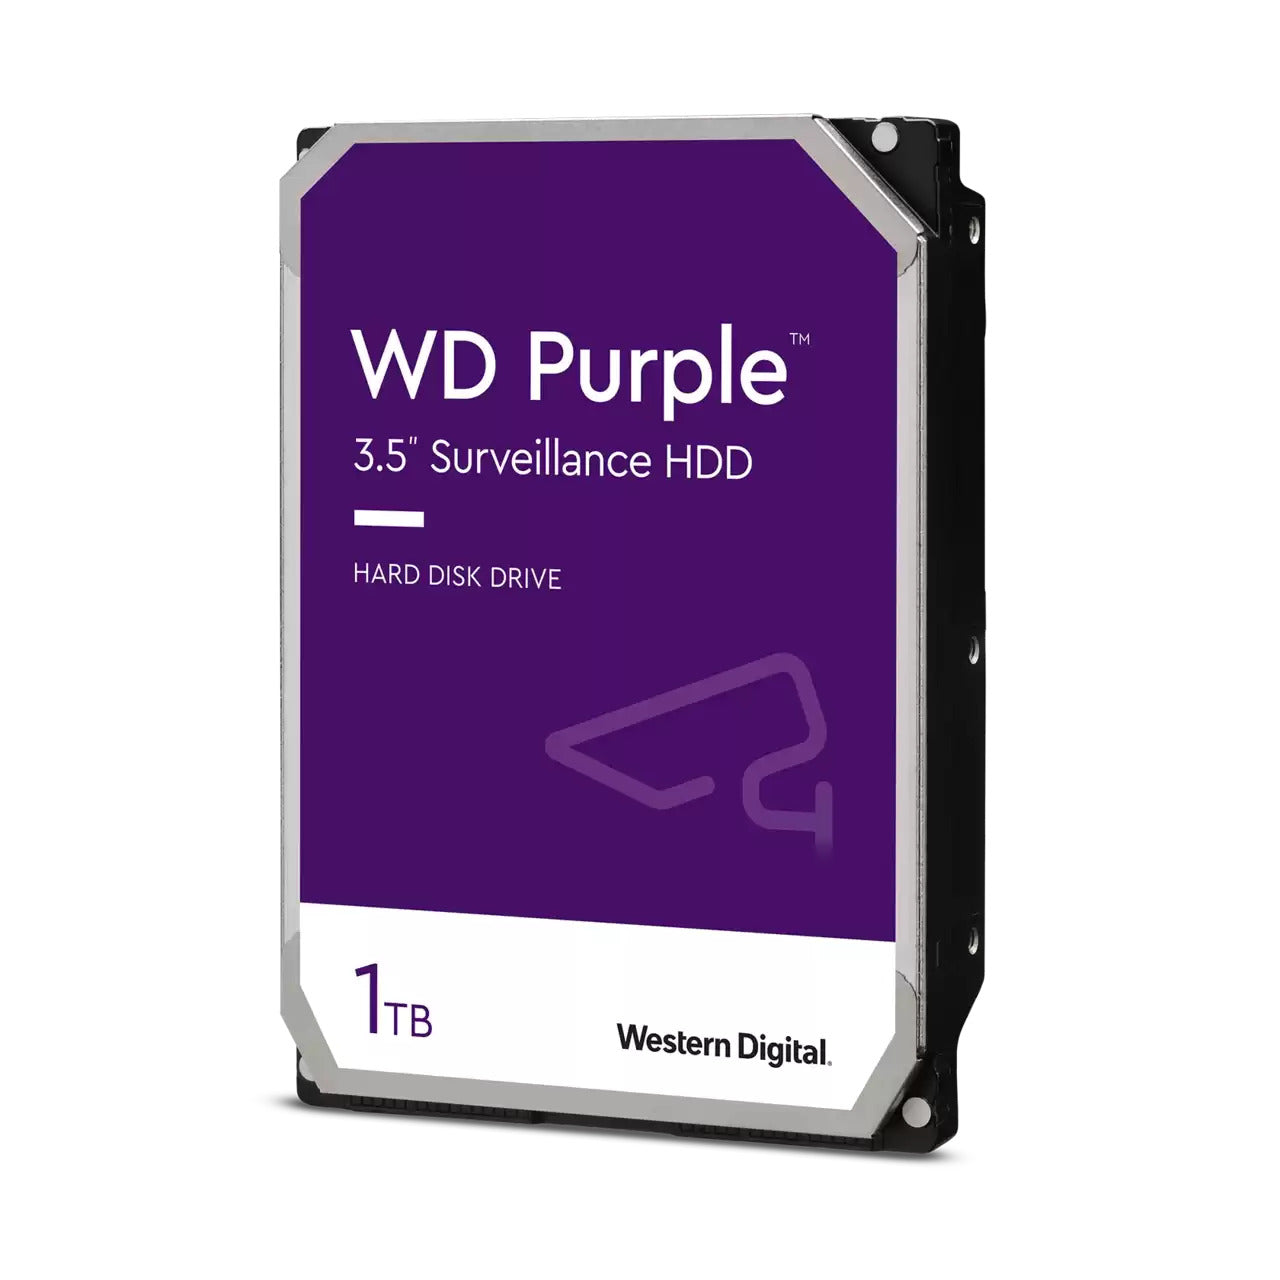 wd purple surveillance hard drive 1tb